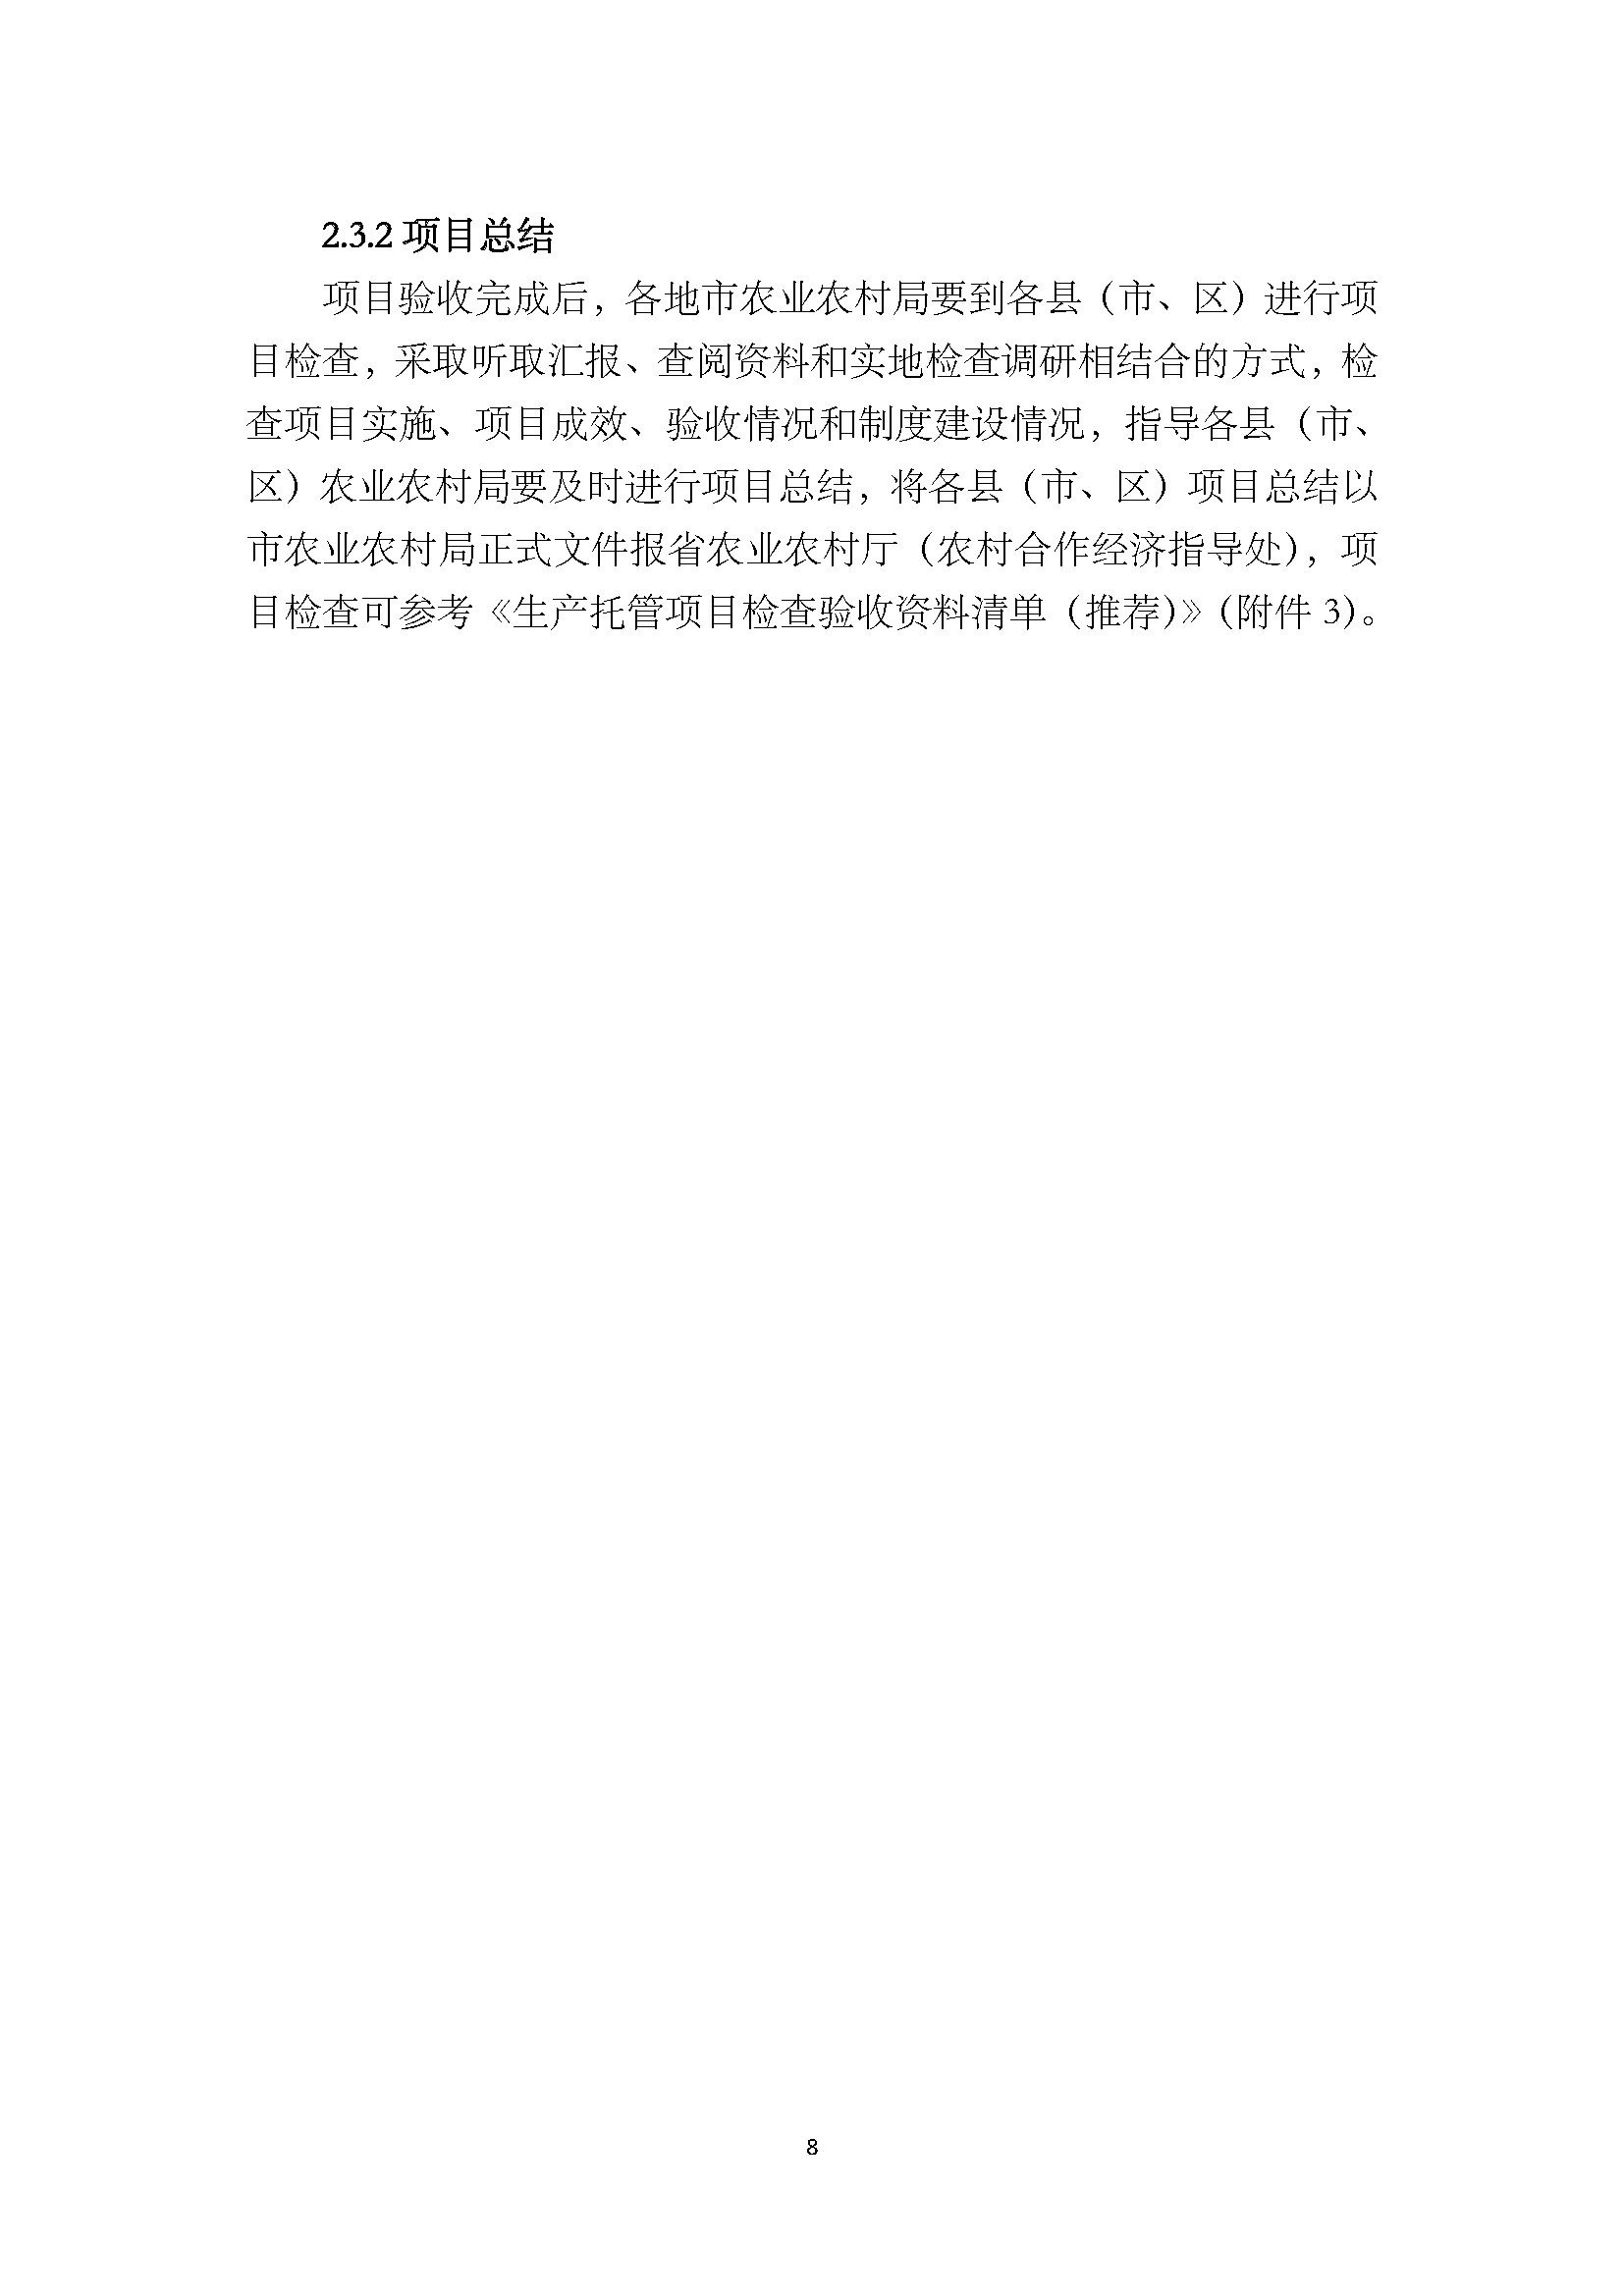 1.广东省农业生产托管服务工作手册_页面_10.jpg